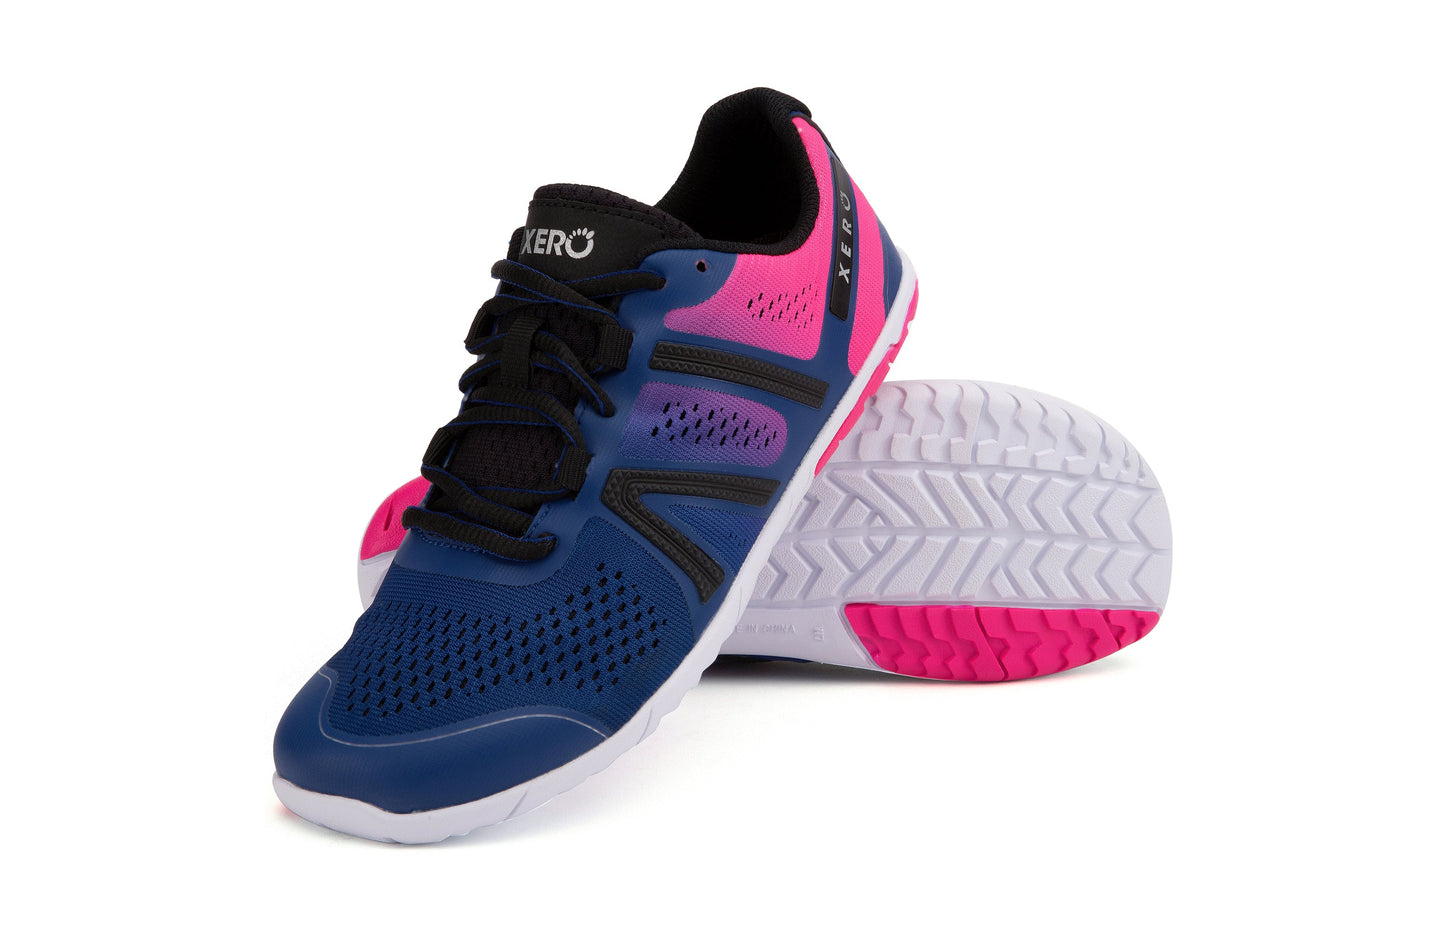 Xero Shoes HFS Womens barfods træningssko til kvinder i farven sodalite blue / pink glow, par